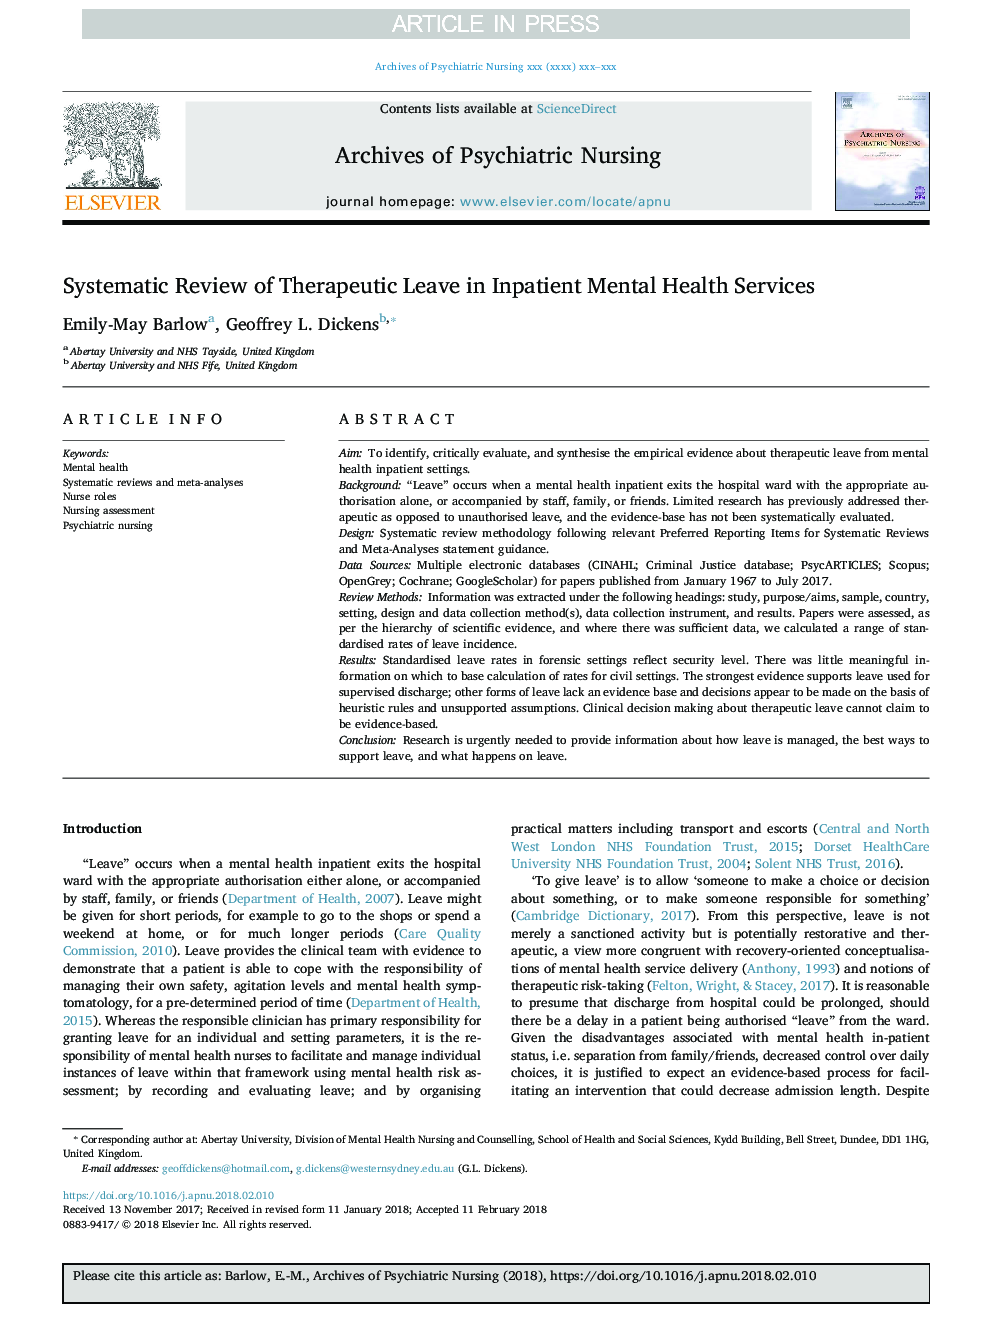 بررسی سیستماتیک بازنشستگی درمانی در خدمات بهداشت روان بستری 